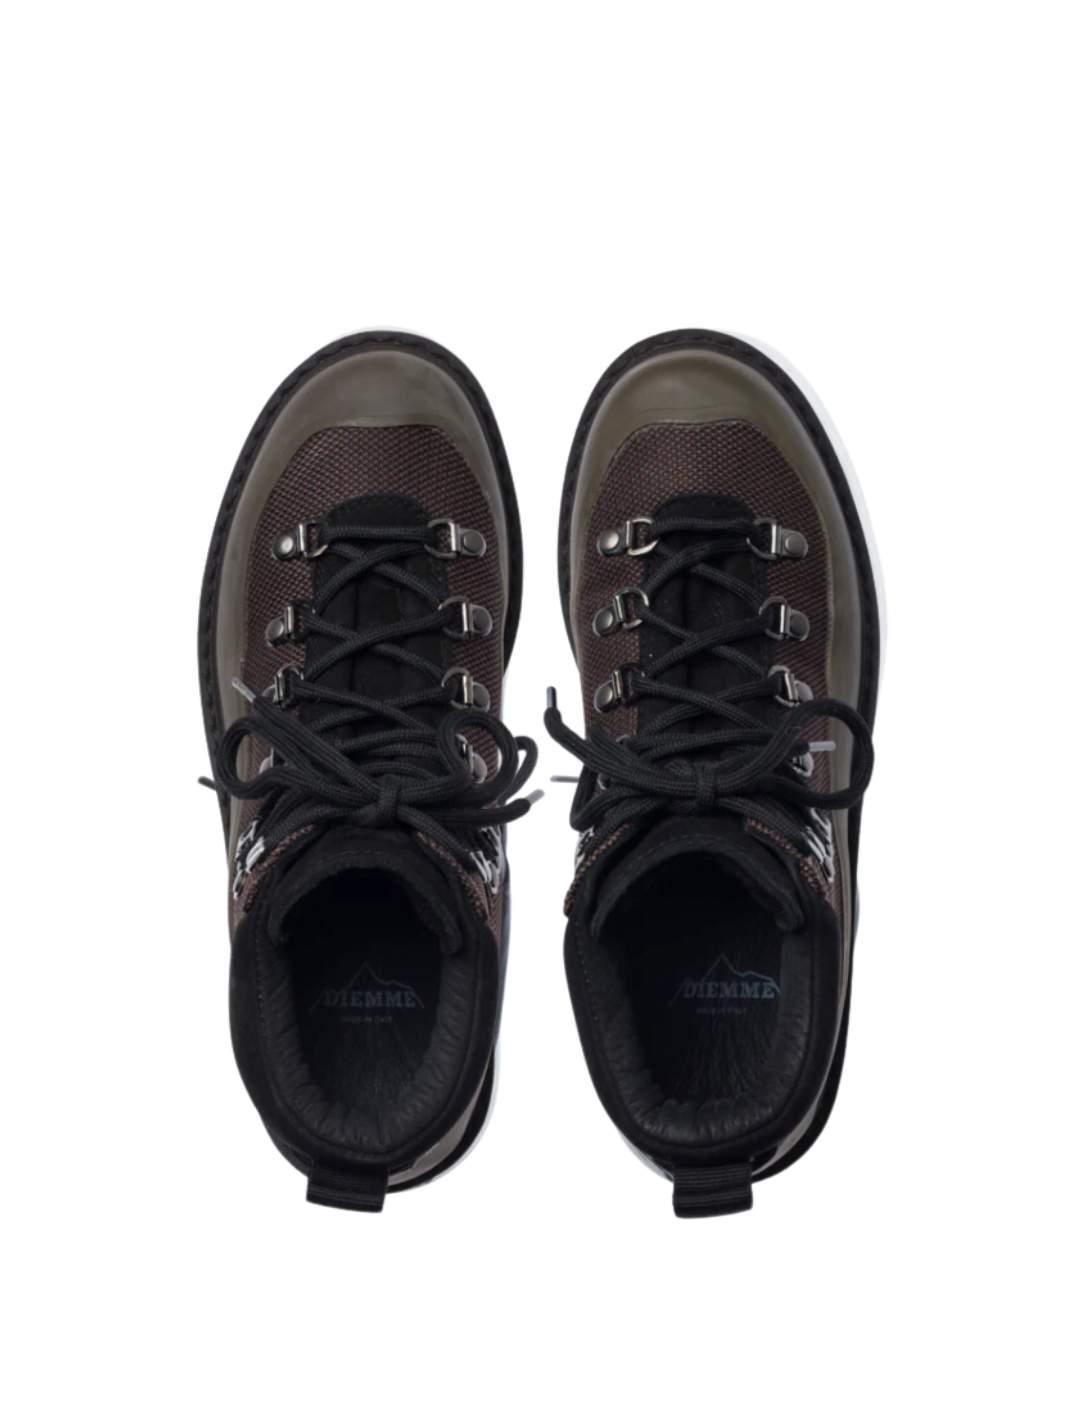 Diemme Shoes Boots | Roccia Vet Sport Brown